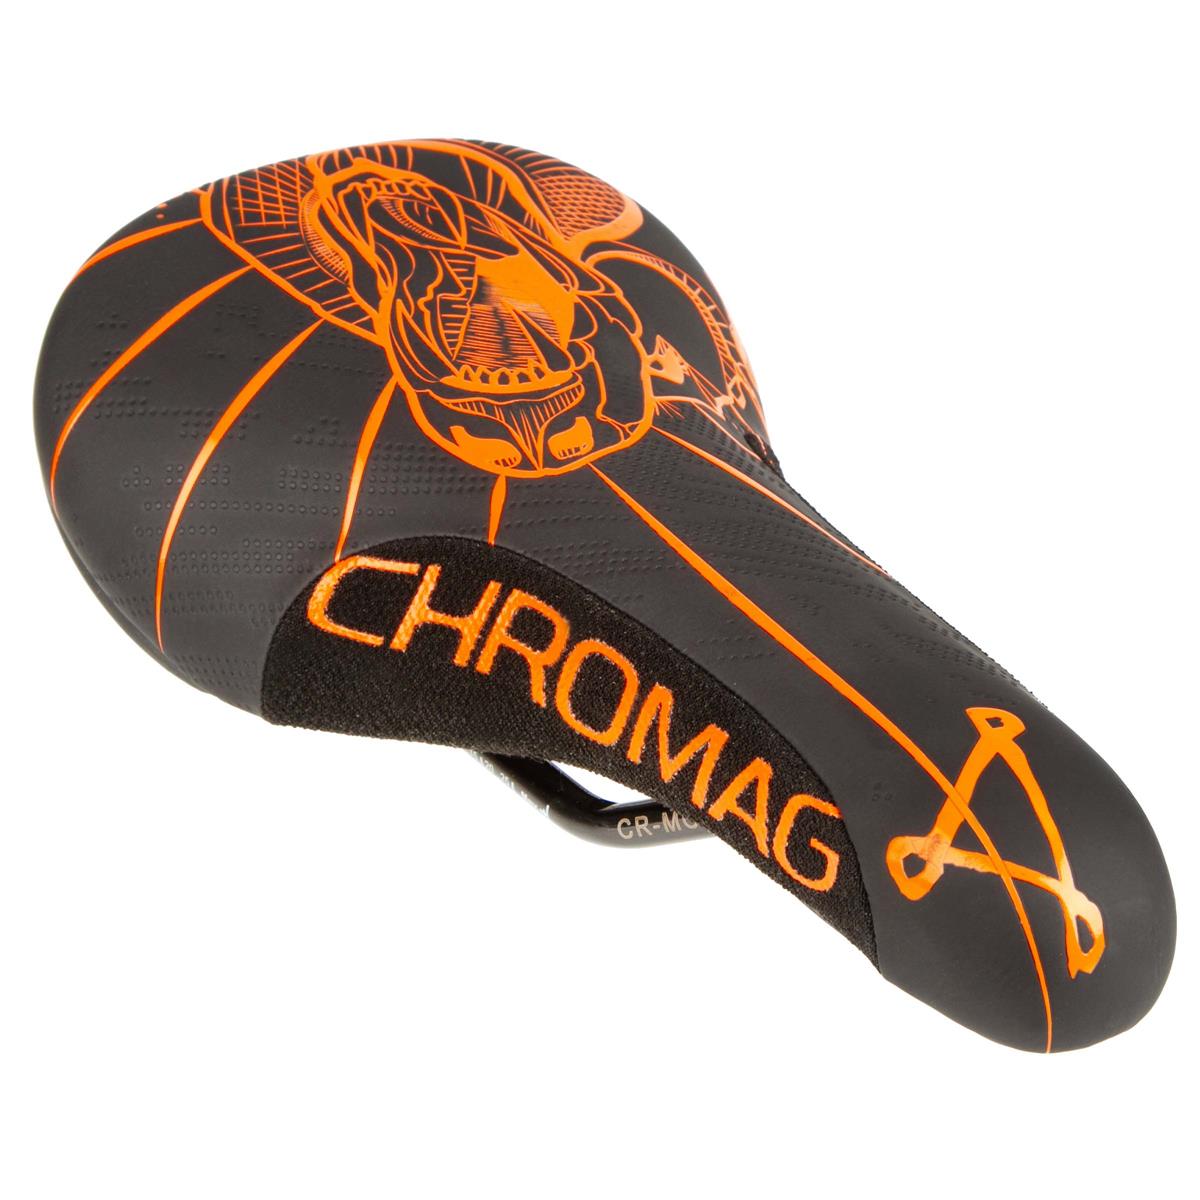 Chromag Sella Overture 2019 243 x 136 mm, Nero/Arancione